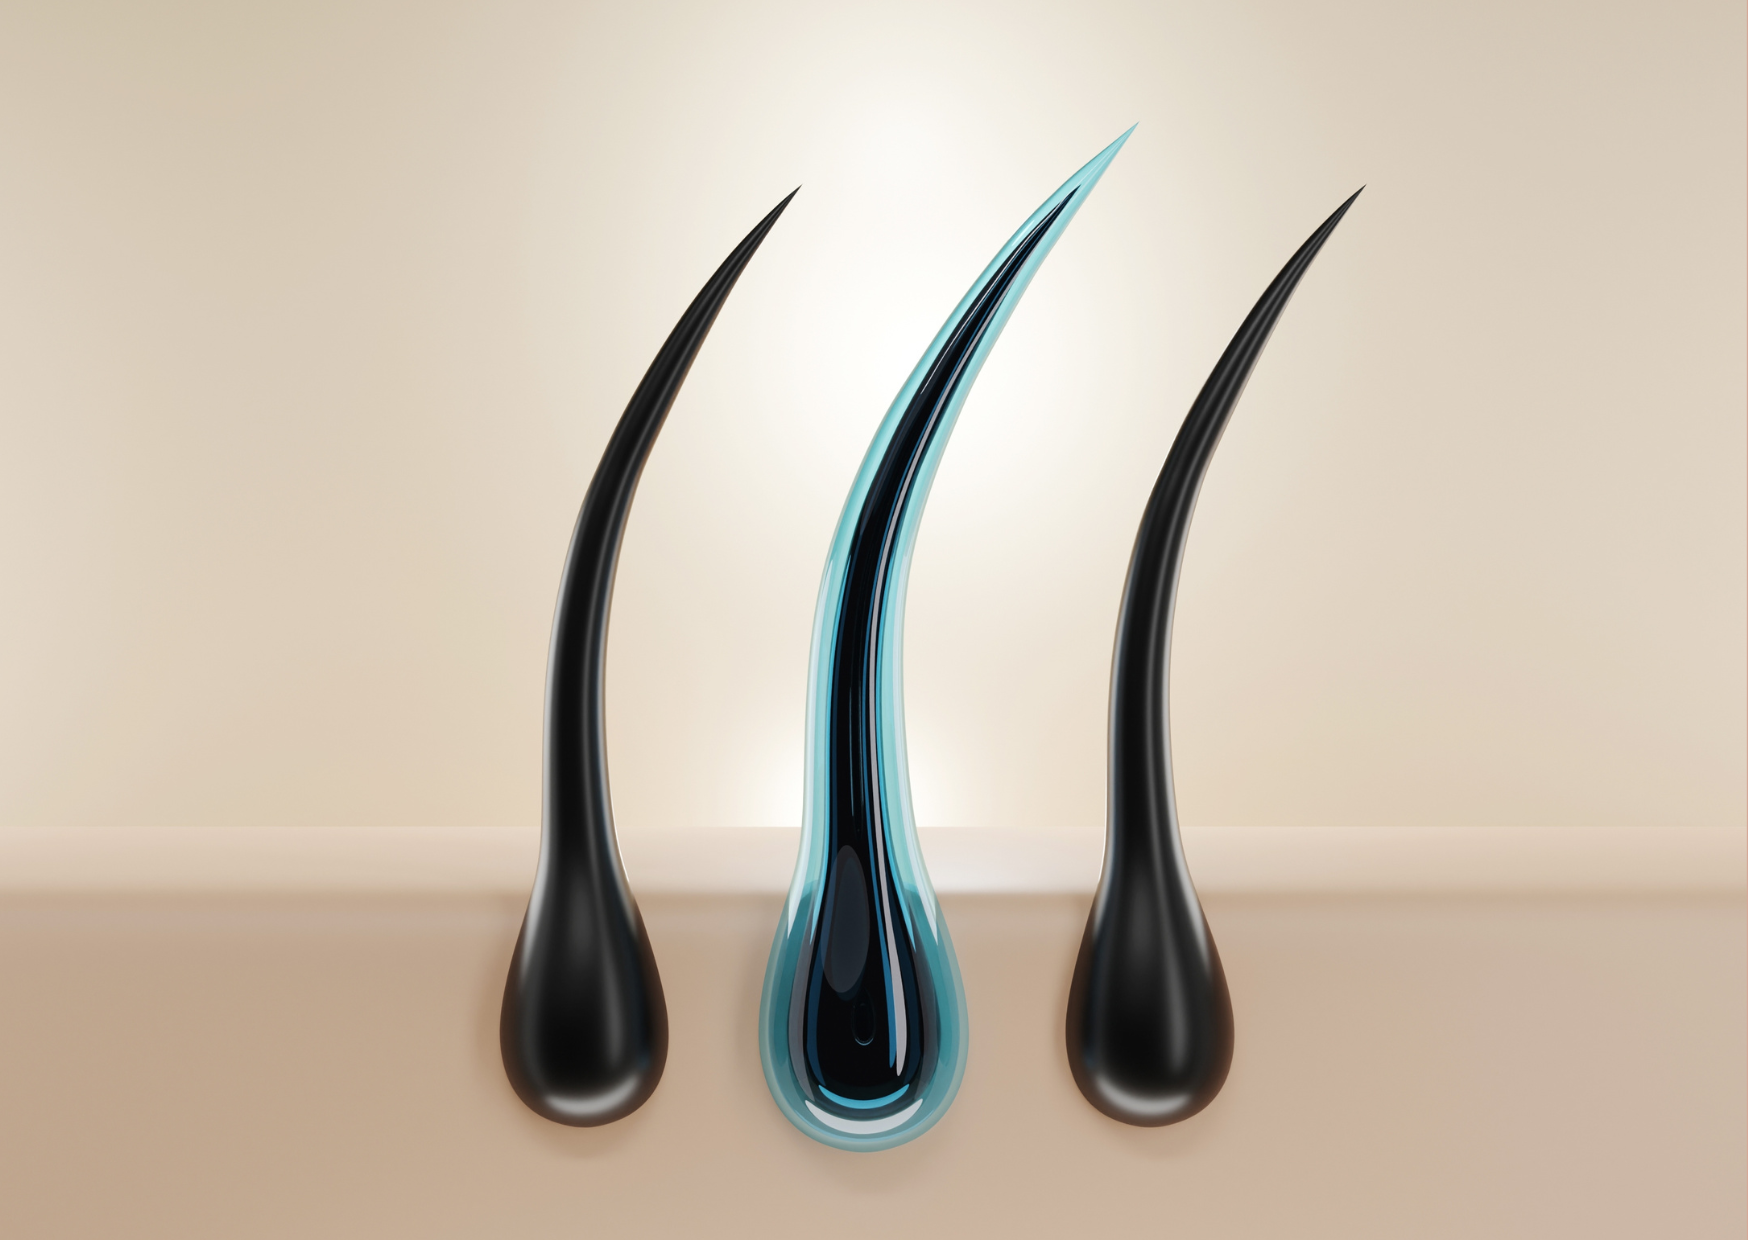 Exemplificando o processo de ação da nova linha Hydra Hair Therapy de Mutari Pro, a ilustração mostra em detalhes e zoom, três fios de cabelo presos ao couro cabeludo, sendo que o do meio está com uma camada protetora azul, representando a reposição hídrica.